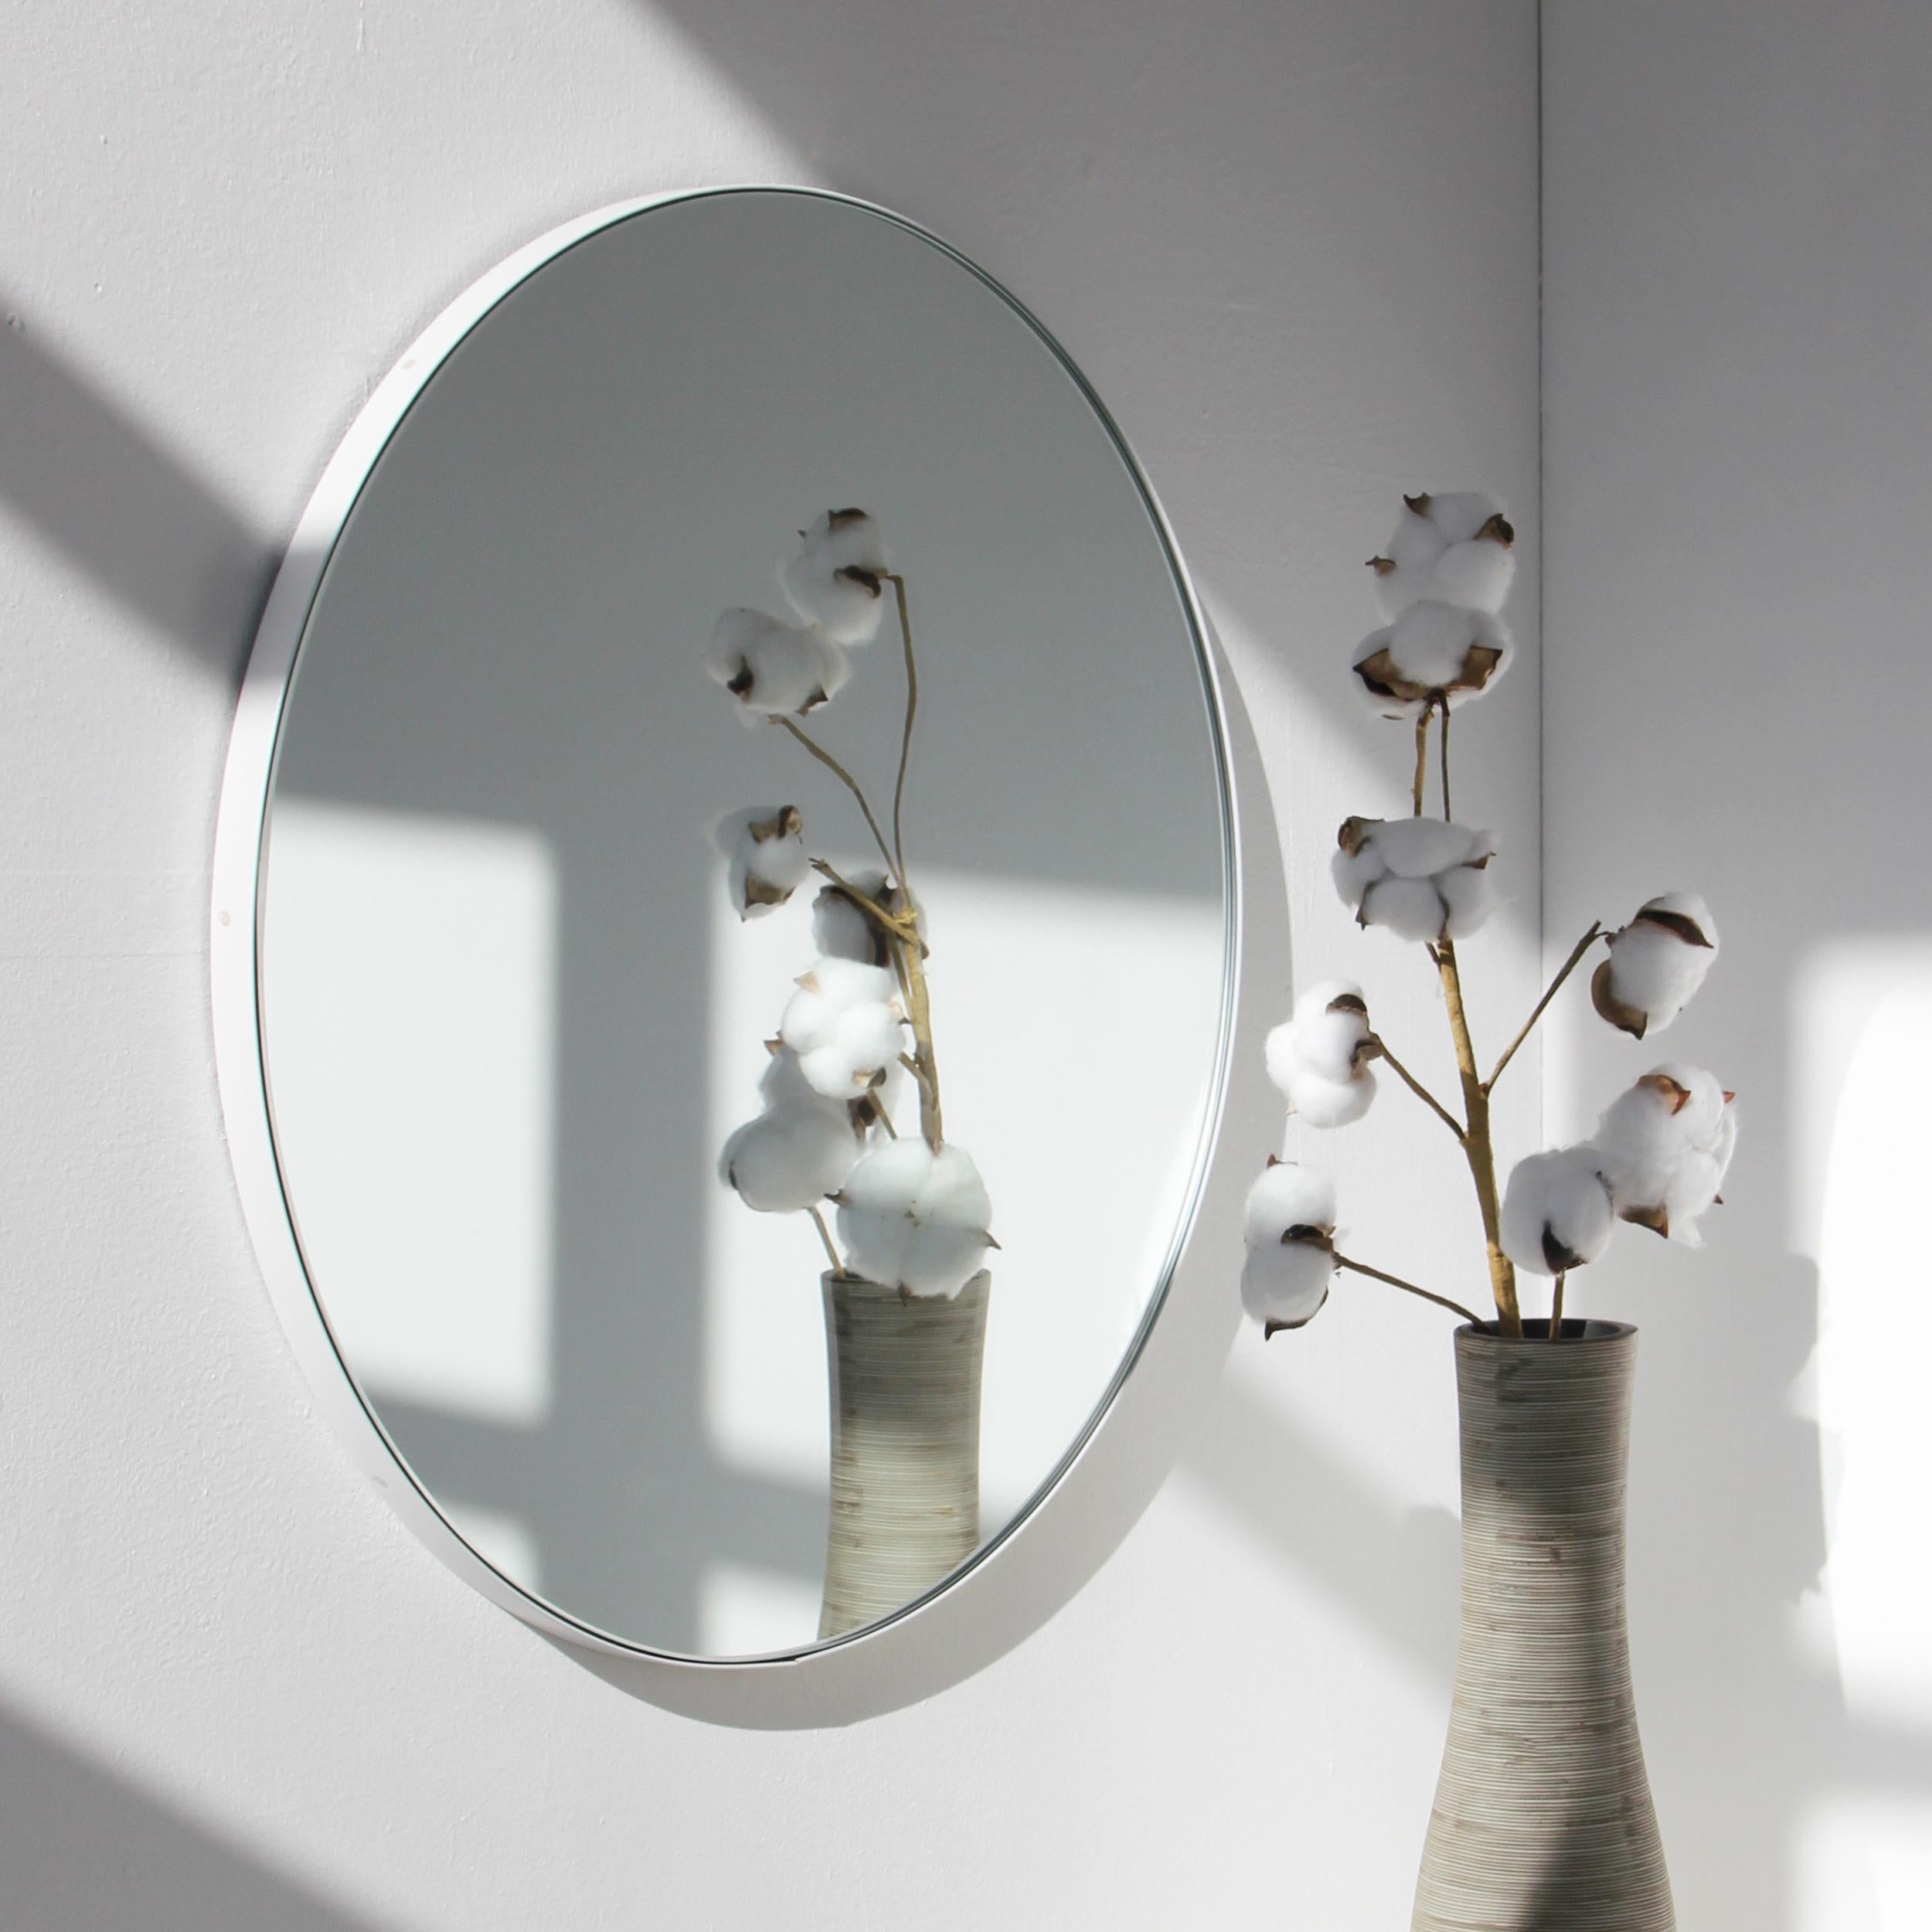 Miroir rond minimaliste avec un cadre moderne en aluminium peint par poudrage en blanc. Conçu et fabriqué à la main à Londres, au Royaume-Uni.

Les miroirs de taille moyenne, grande et extra-large (60, 80 et 100 cm) sont équipés d'un ingénieux